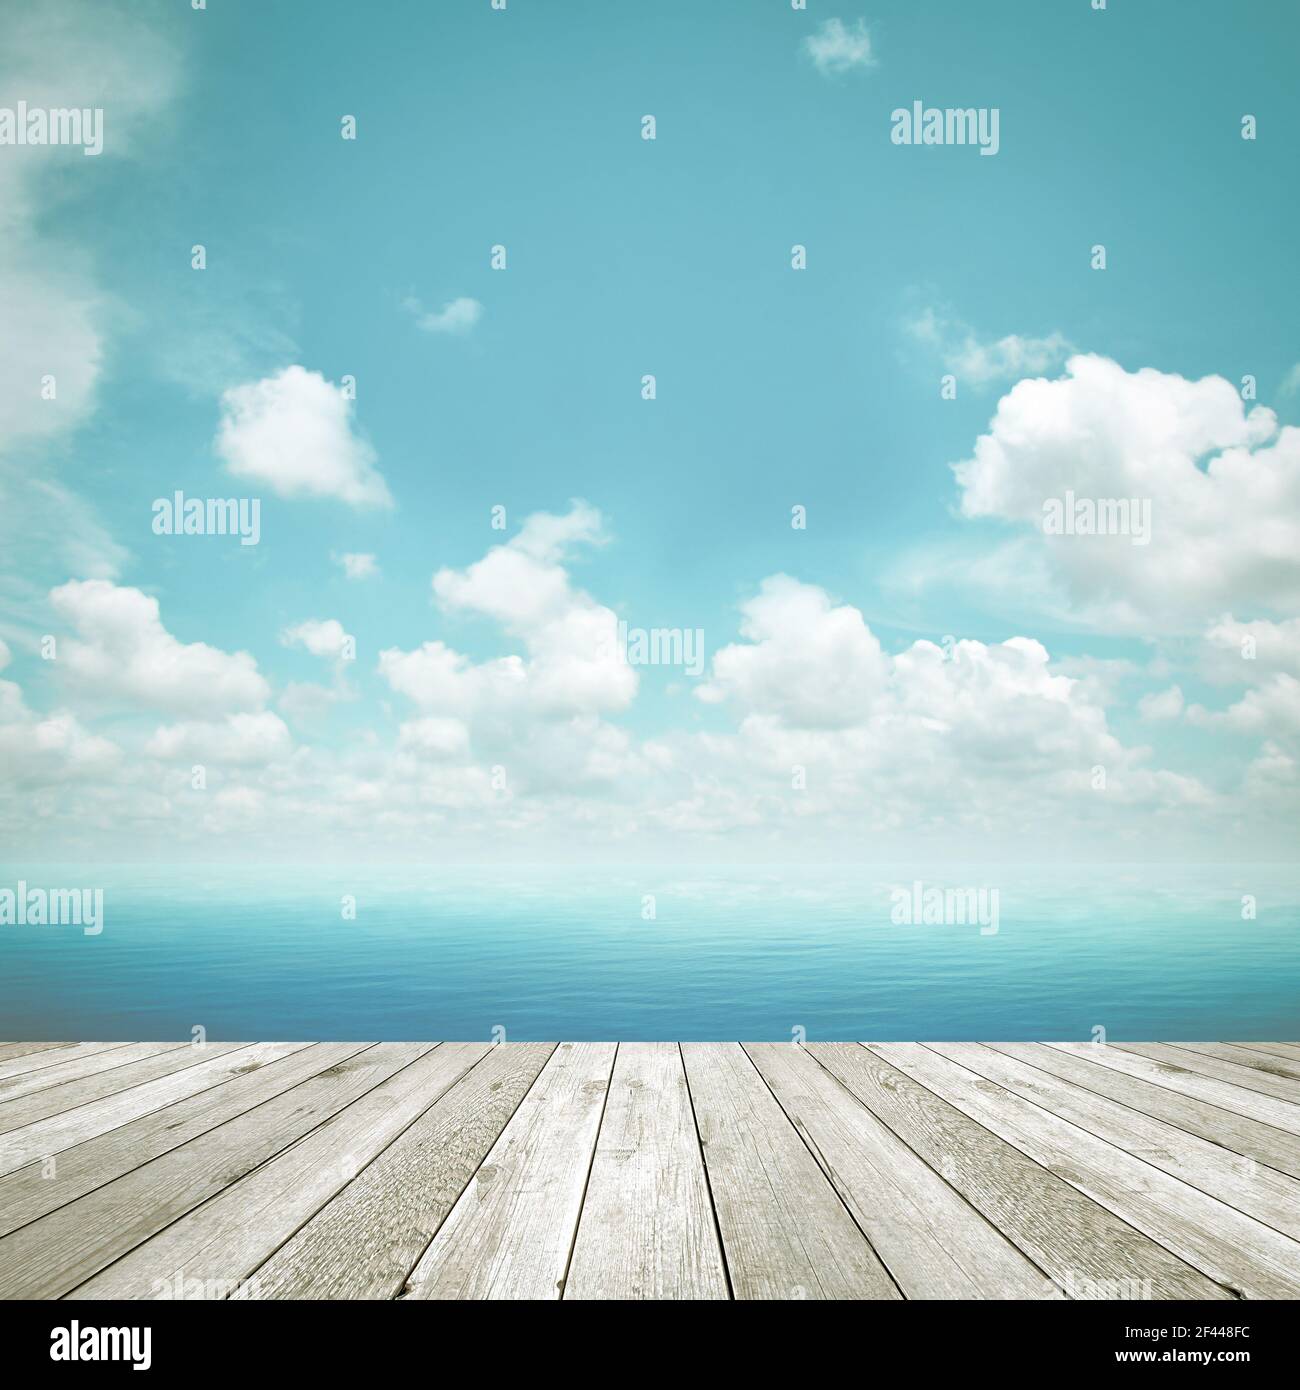 Holzplanke als Pier auf blauem Himmel Hintergrund - Retro-Style-Effekt Stockfoto